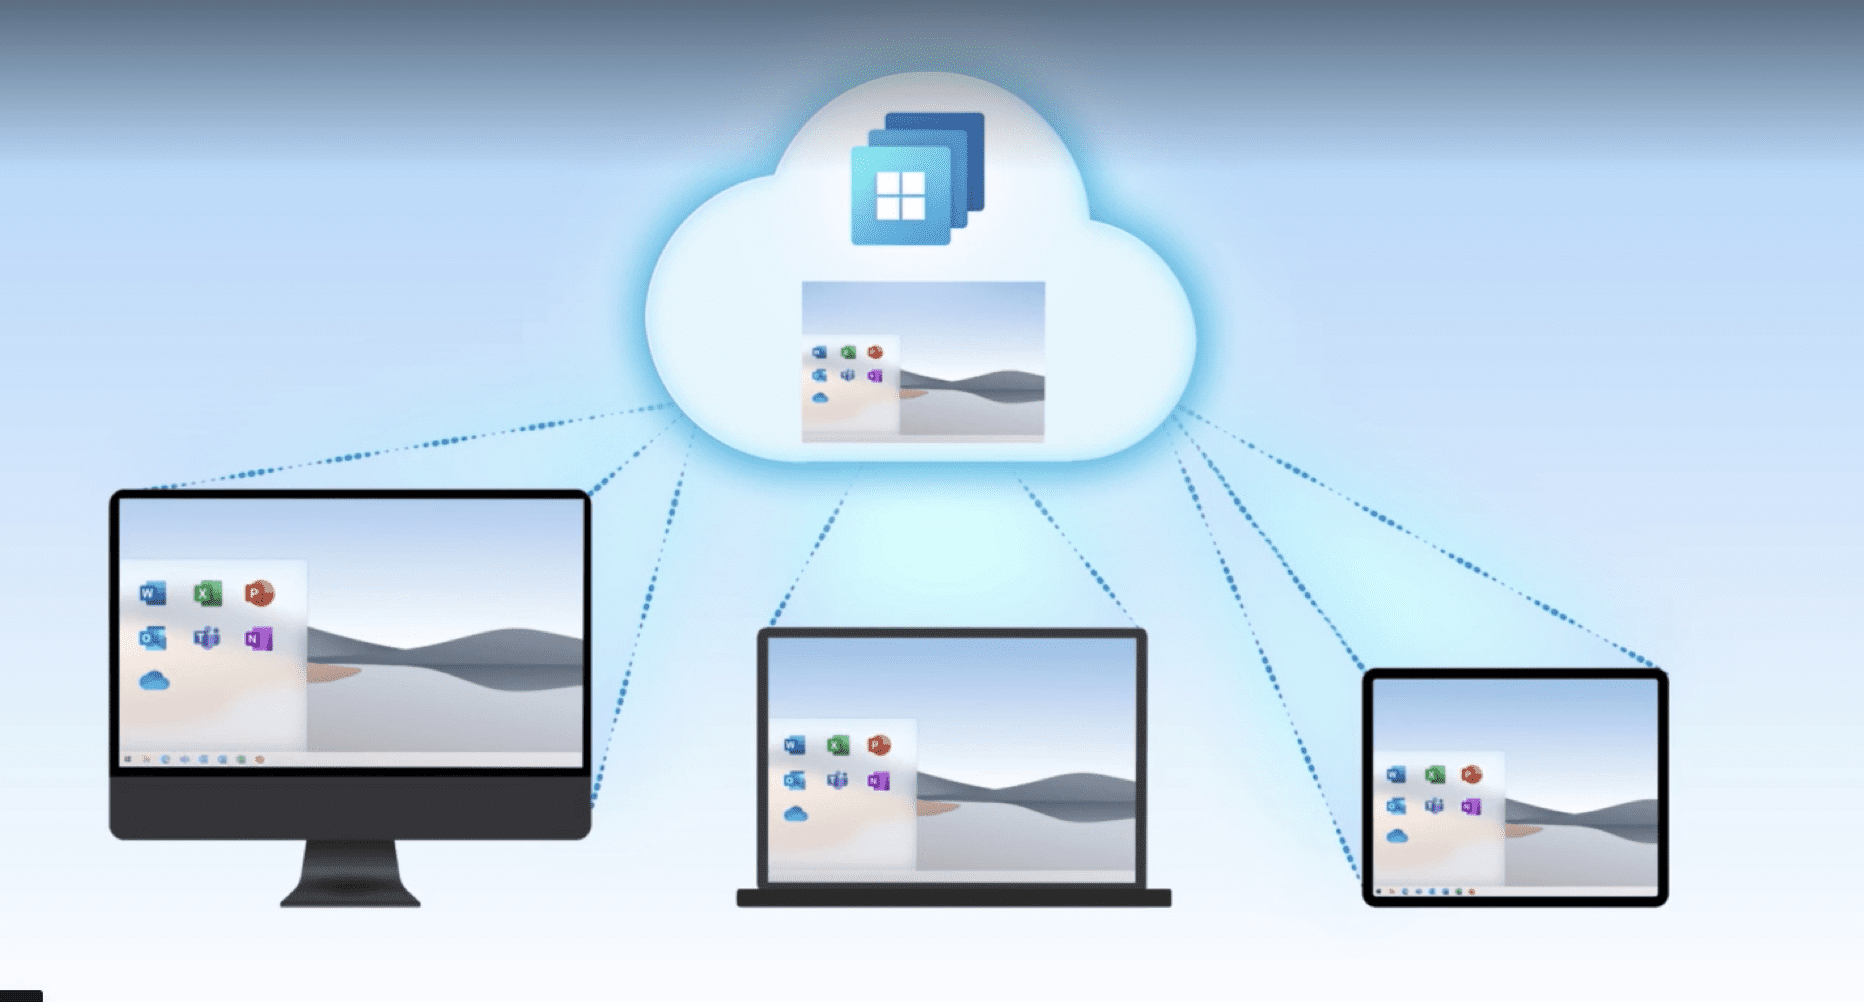 Microsoft Announces Window 365 Cloud Desktop as Its Inspire Partner